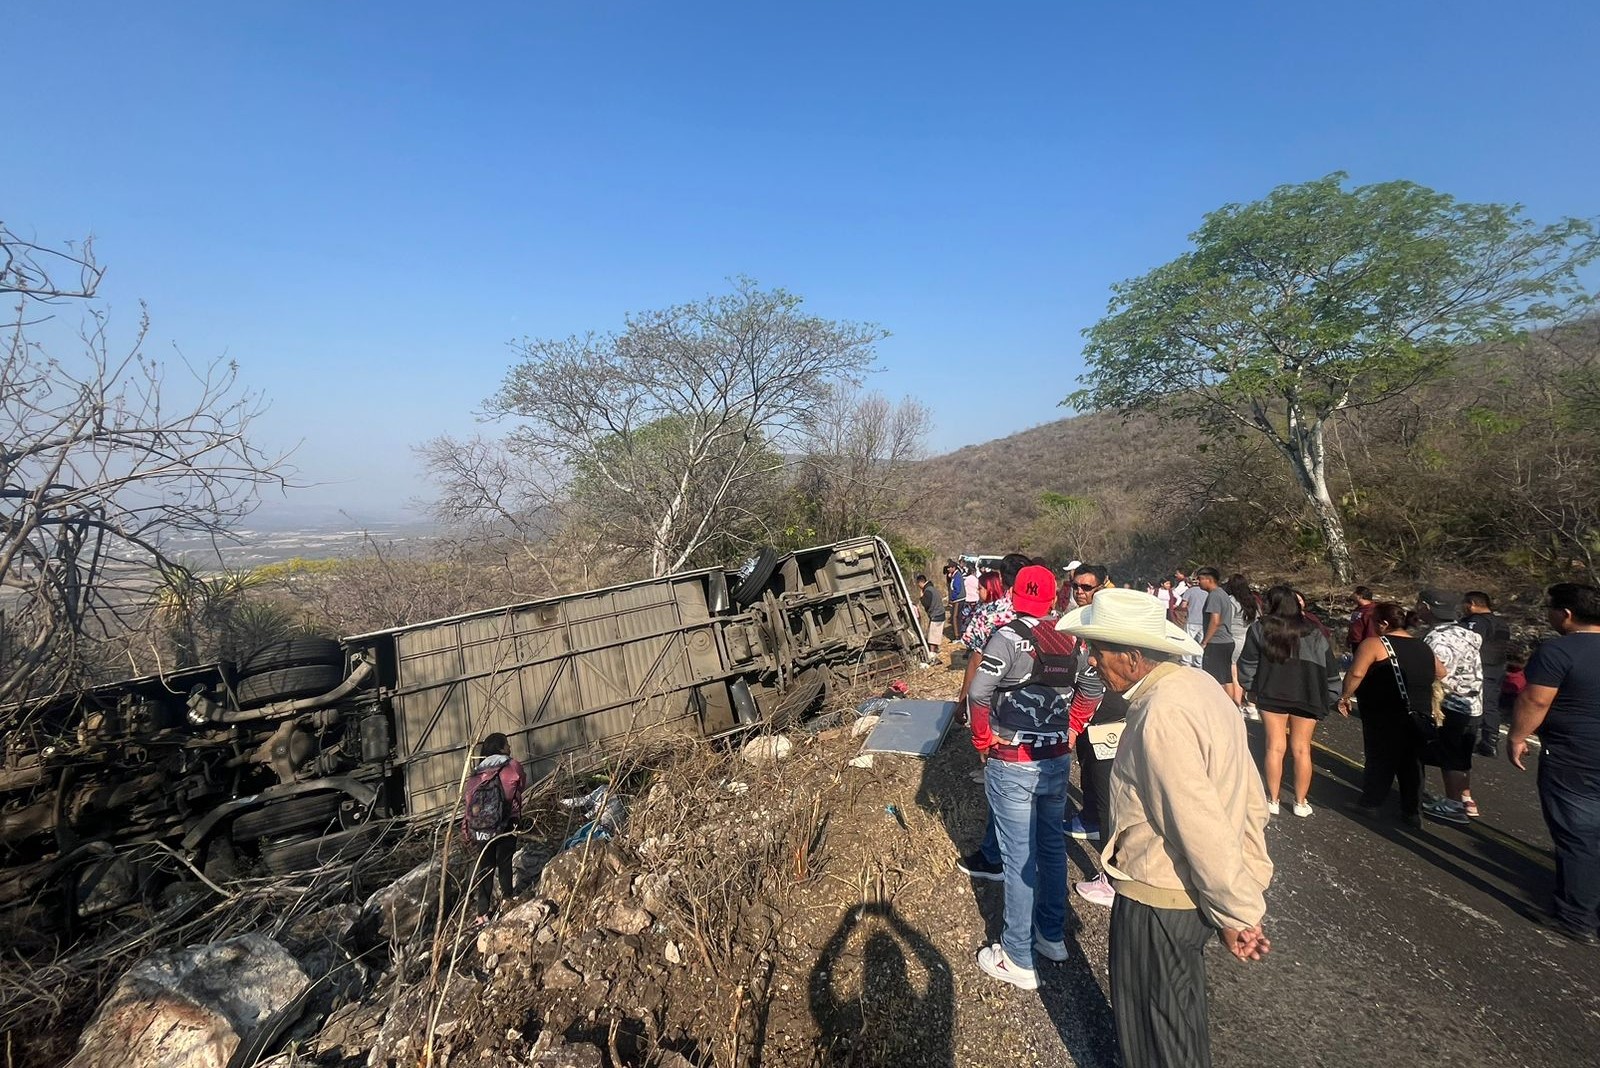 Vuelca autobús con peregrinos sobre El Aguacate, hay 3 muertos